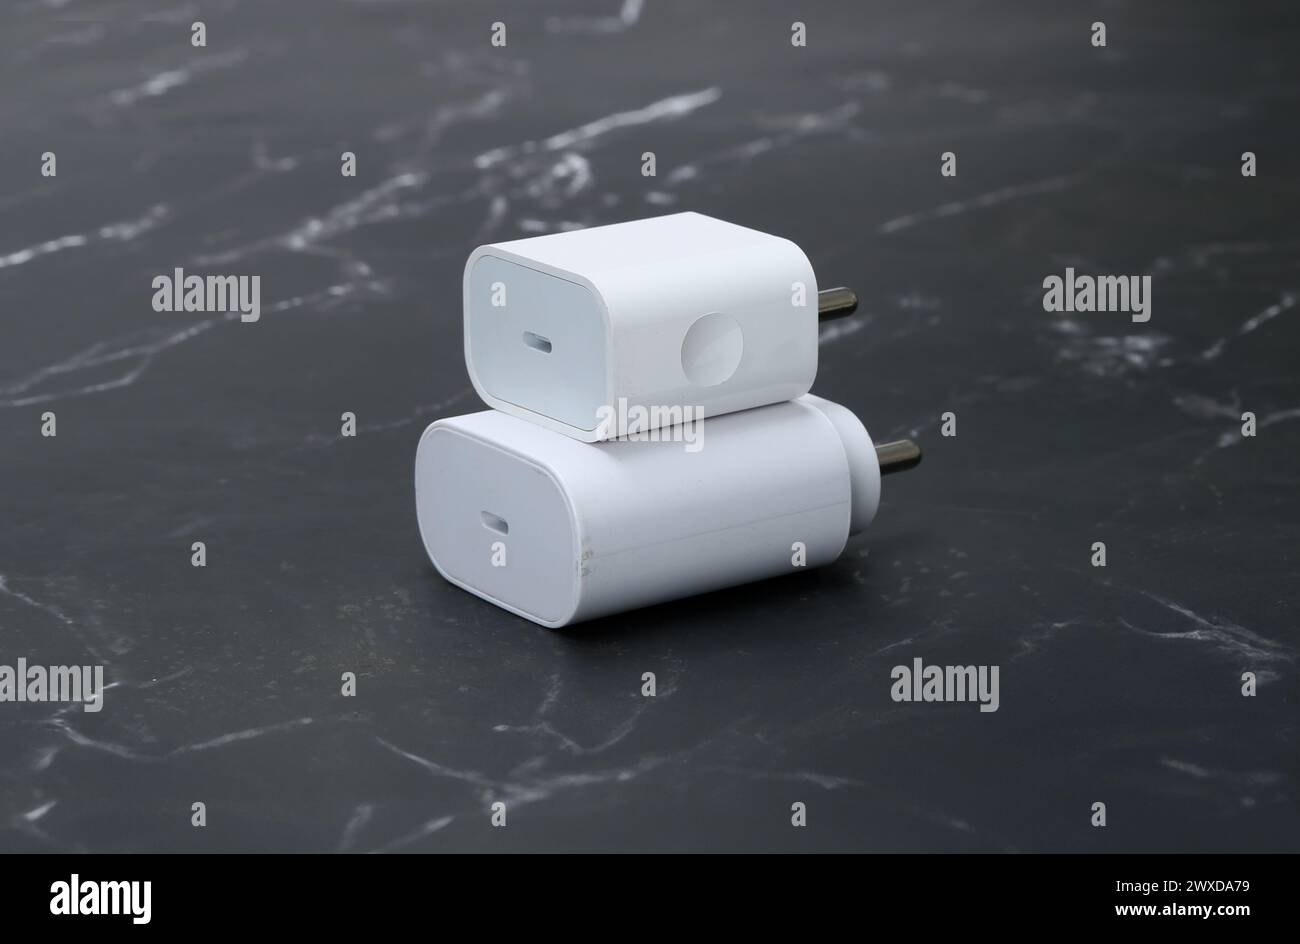 caricabatterie per smartphone bianchi su sfondo in marmo nero Foto Stock